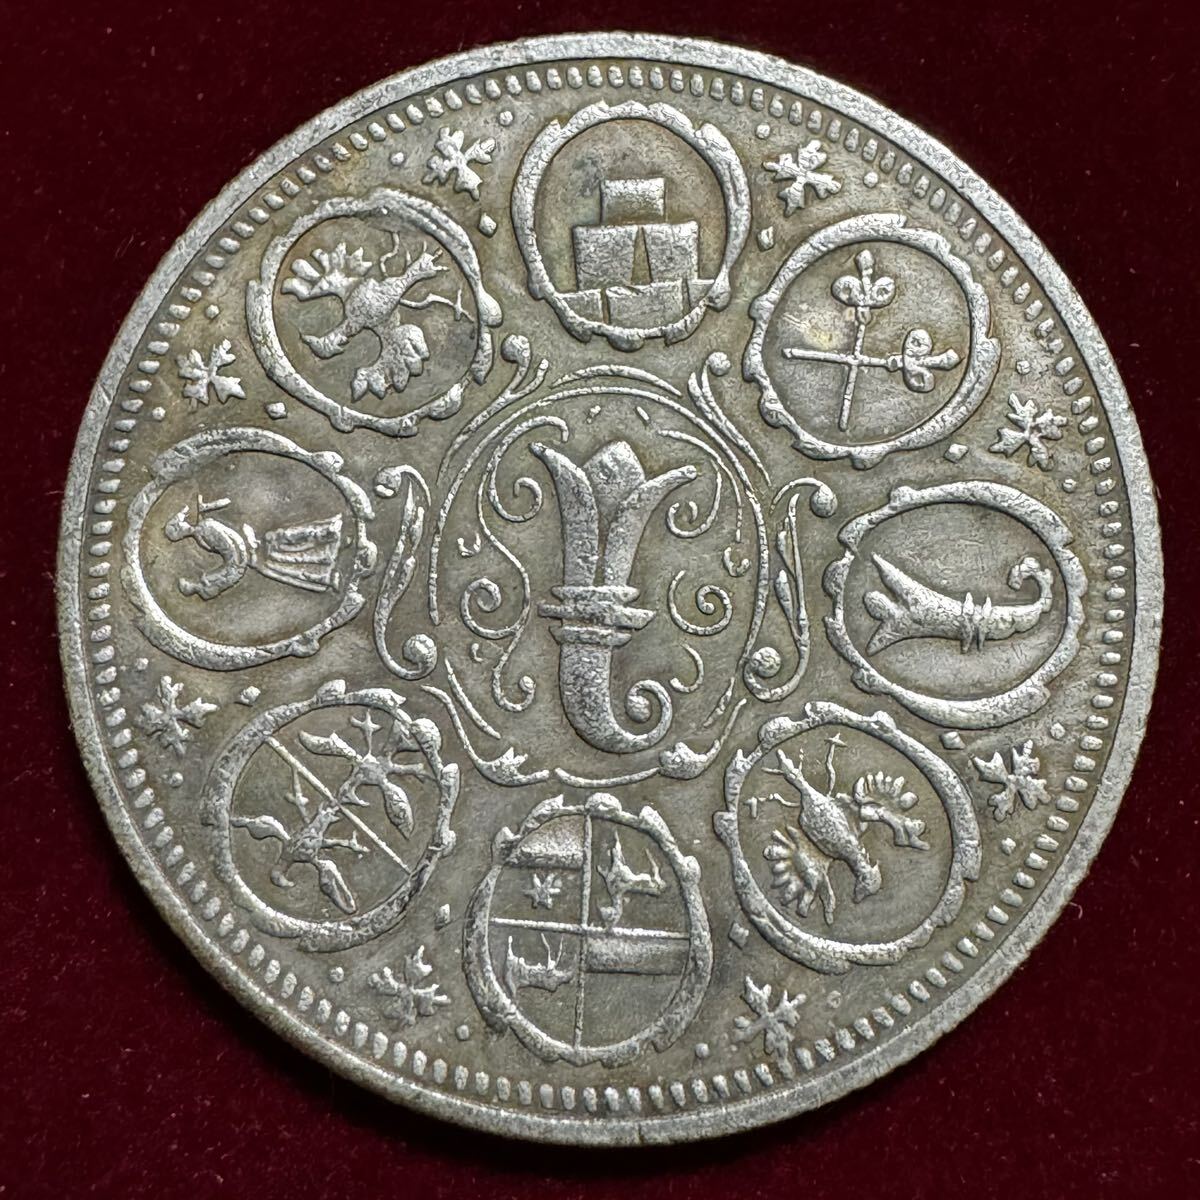 神聖ローマ帝国 バーゼル市 硬貨 古銭 1740年 自由都市 都市の紋章 ターラー コイン 銀貨 外国古銭 海外硬貨 の画像2